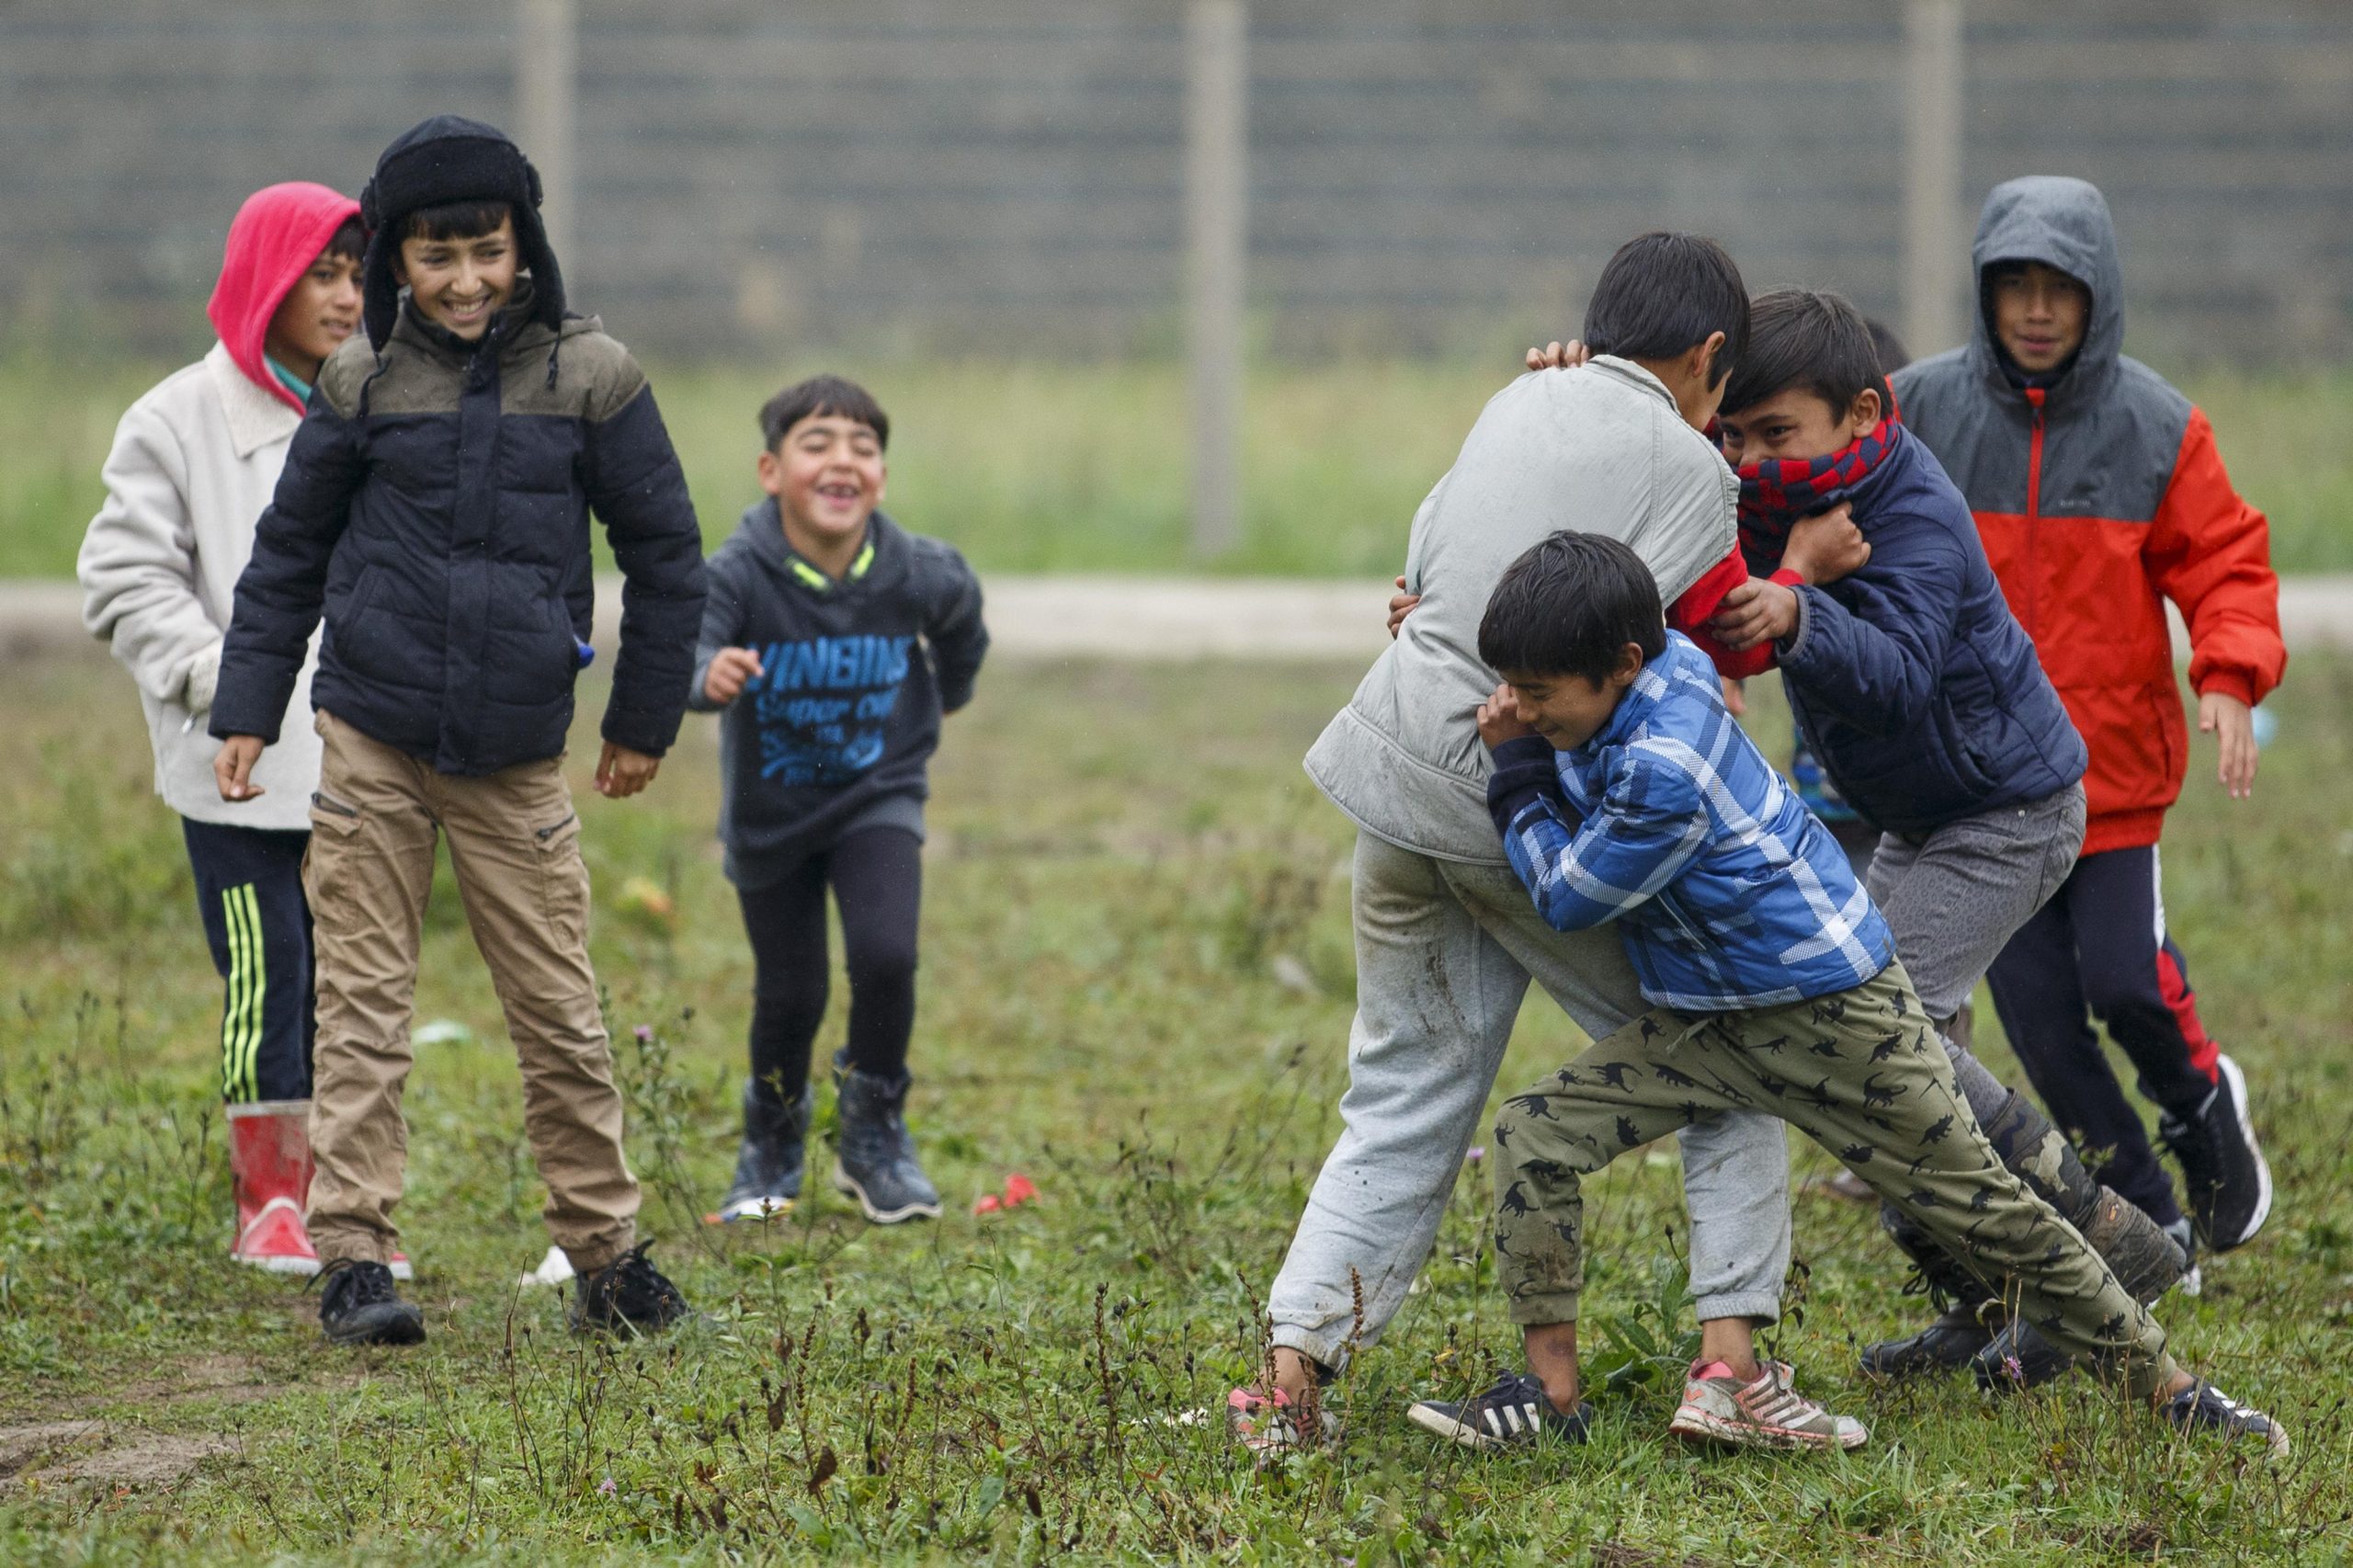 11.10.2021., Velika Kladusa, Bosna i Hercegovina - Stotine migranata, najvise porodice sa djecom nalazi se u novoformiranom improvizovanom satorskom naselju u blizini Velike Kladuse, svega nekoliko kilometara od granice sa Hrvatskom. Svi oni odbijaju ulazak u migrantske centre i u nadi iscekuju ljepse vrijeme pa da jos jednom pokusaju preci granicu i ostvare cilj odlaska u zemlje Evropske unije. Mnogi od njih su nekoliko puta pokusali preci granicu, te su nakon susreta sa granicnom policijom vraceni isprebijani i goli. U kampu nema niti jedna agencija ili organizacija koja pomaze ovim migrantima. Njih oko 300 spava na otvorenom, gdje se jutarnje temperature krecu oko 0 stepeni.